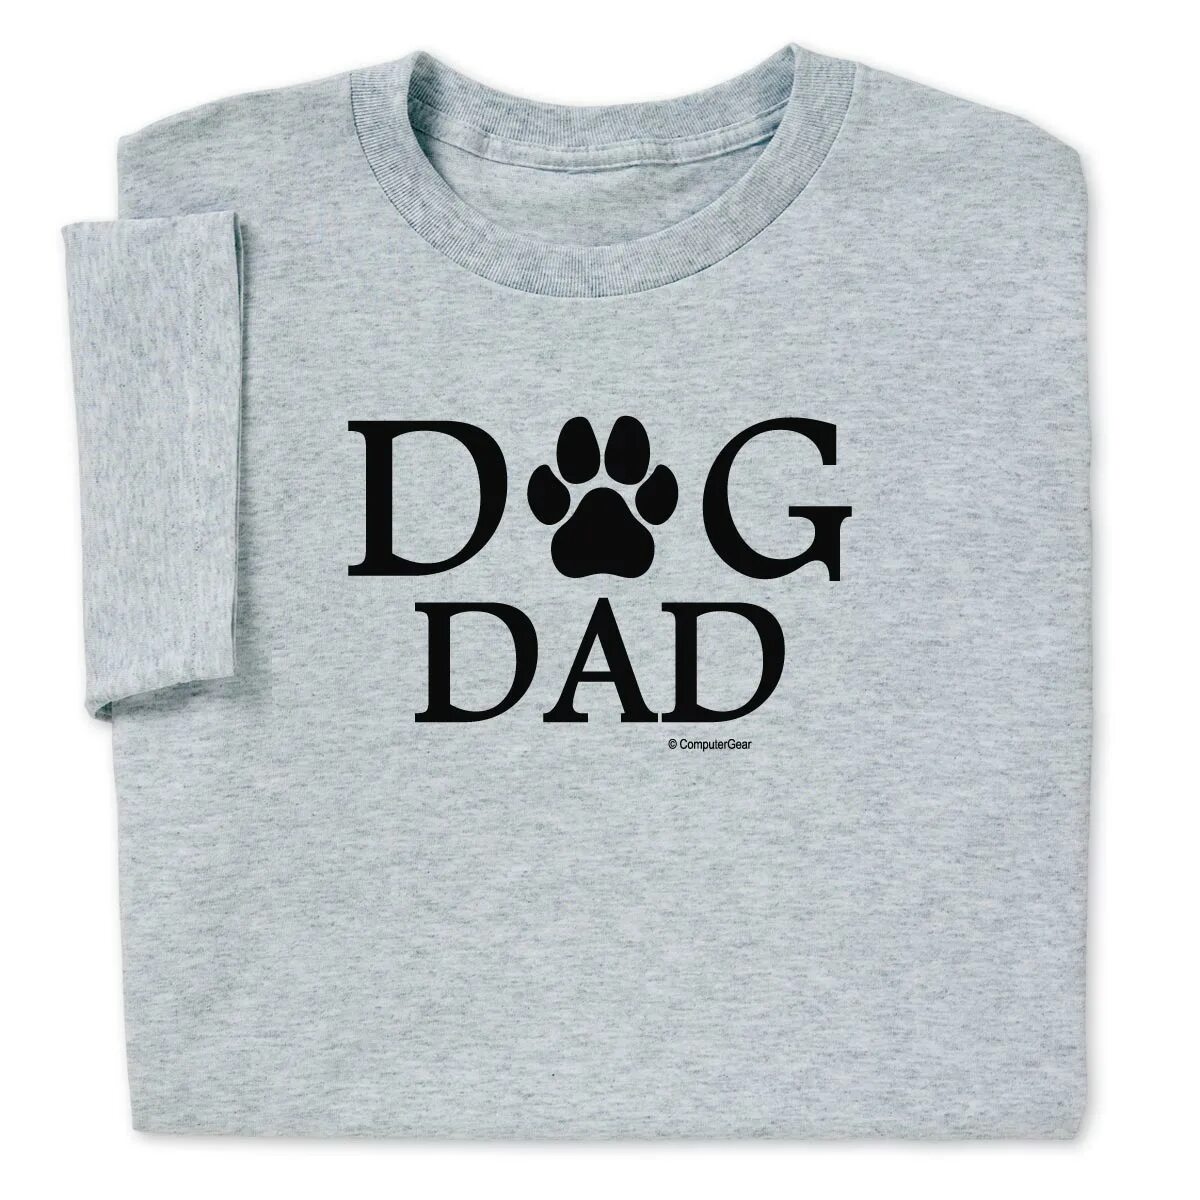 Daddy dog. Dog dad футболка. Funny Dogs футболки. Футболка i Love Dogs. Daddy Dog альбом.